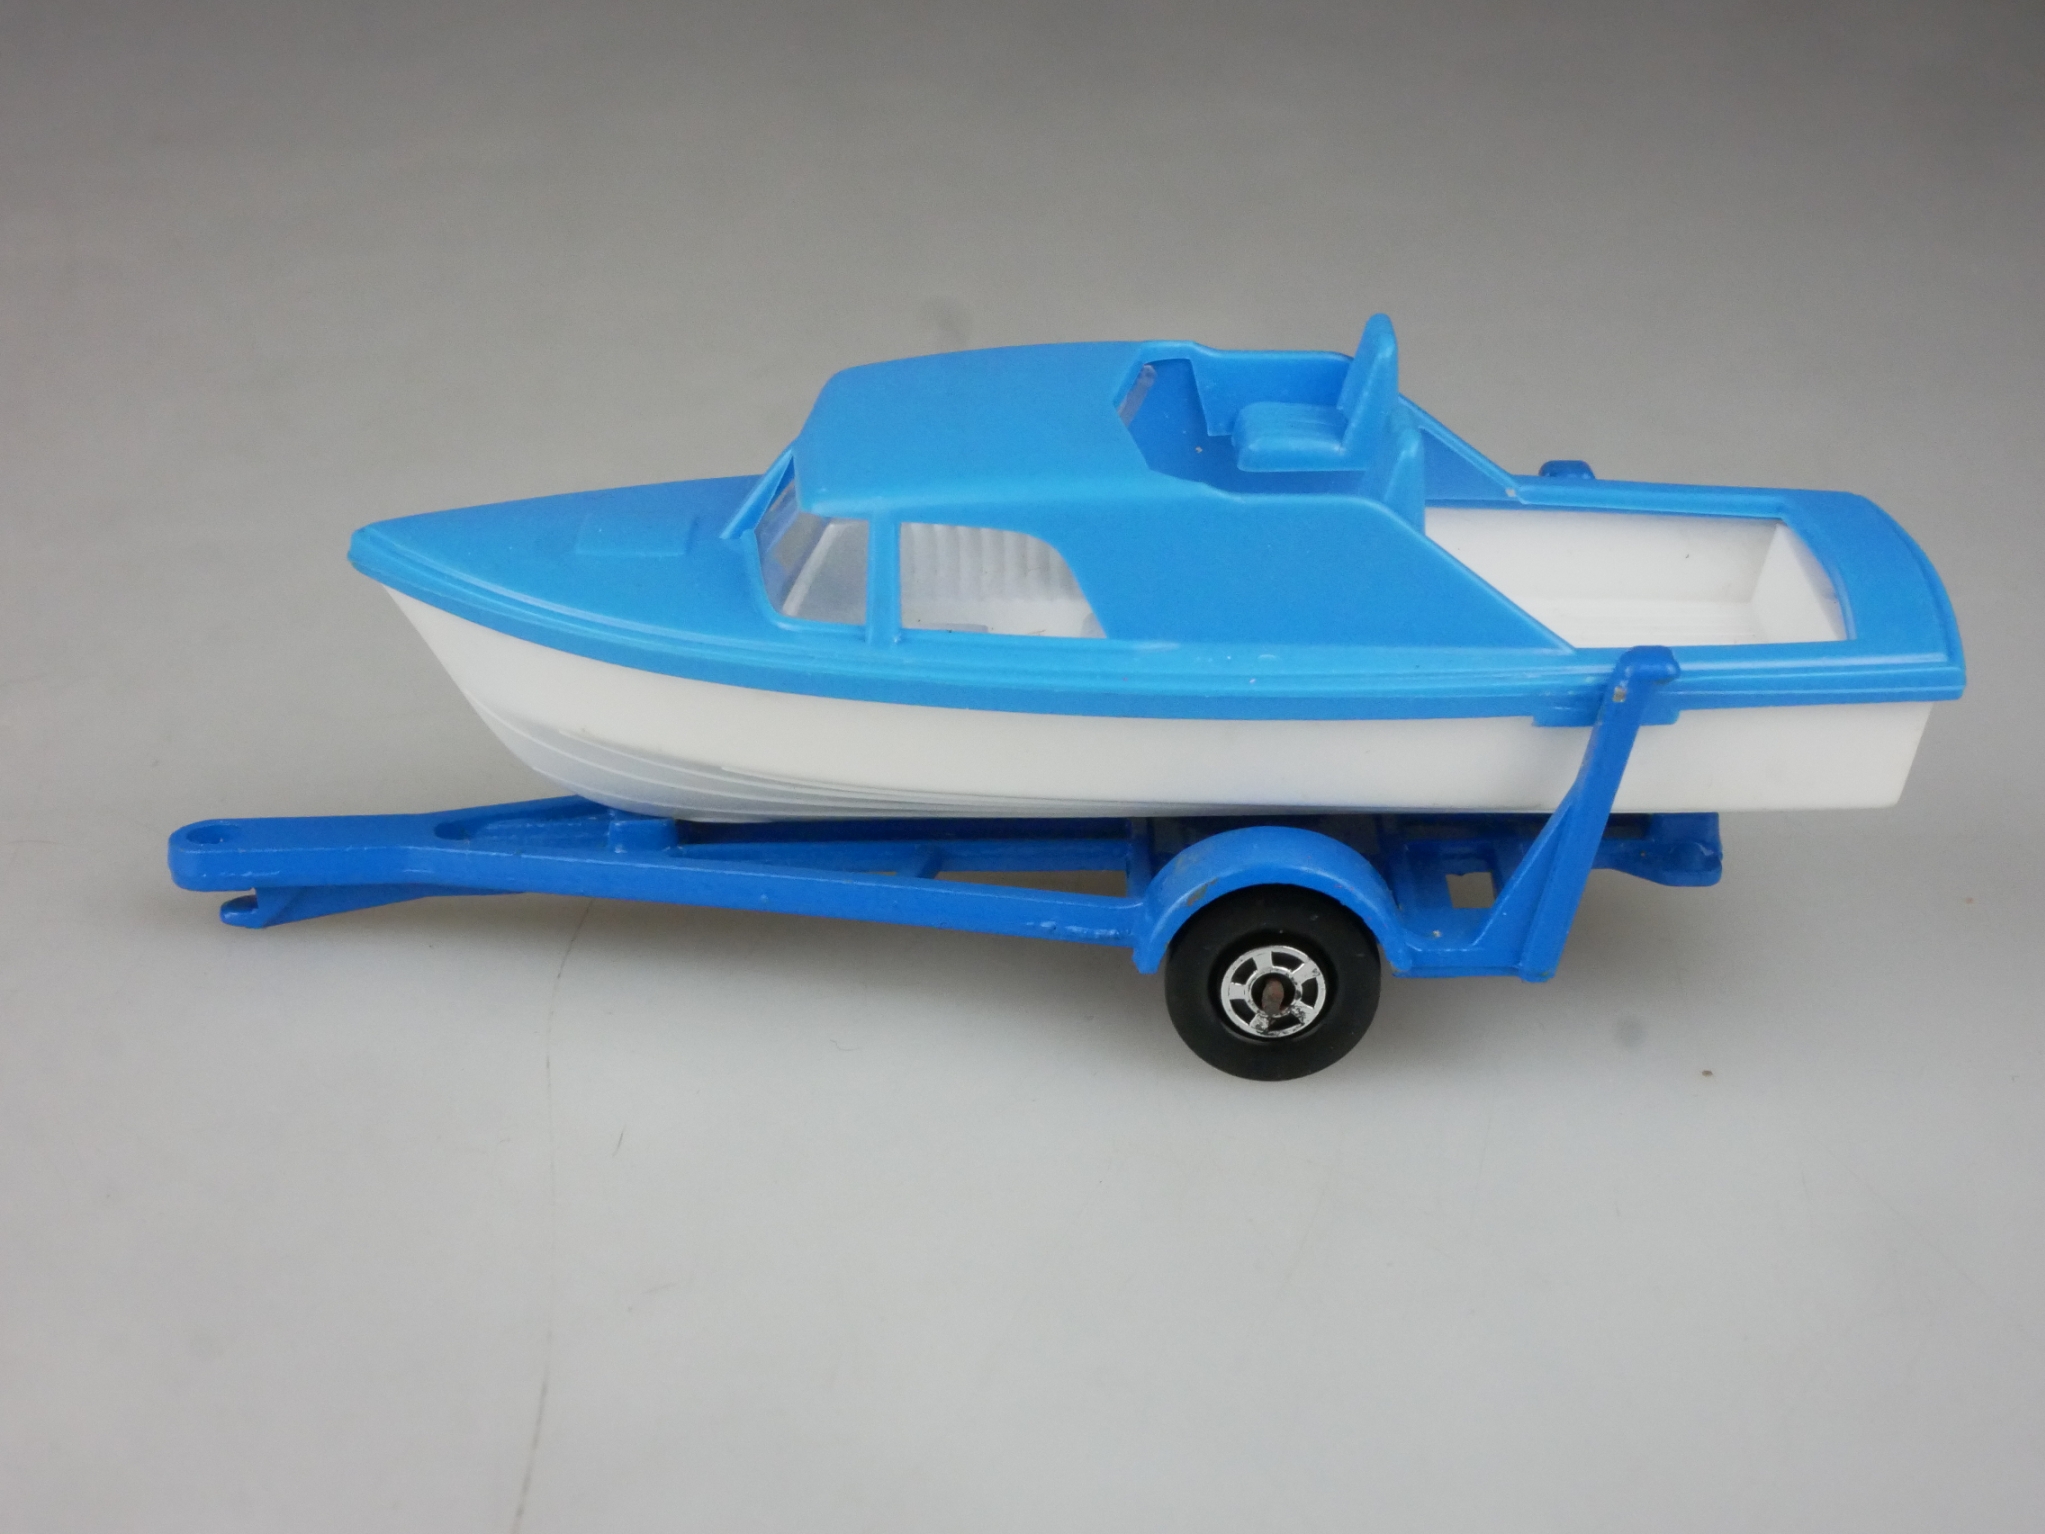 09-A Boat & Trailer - 55249